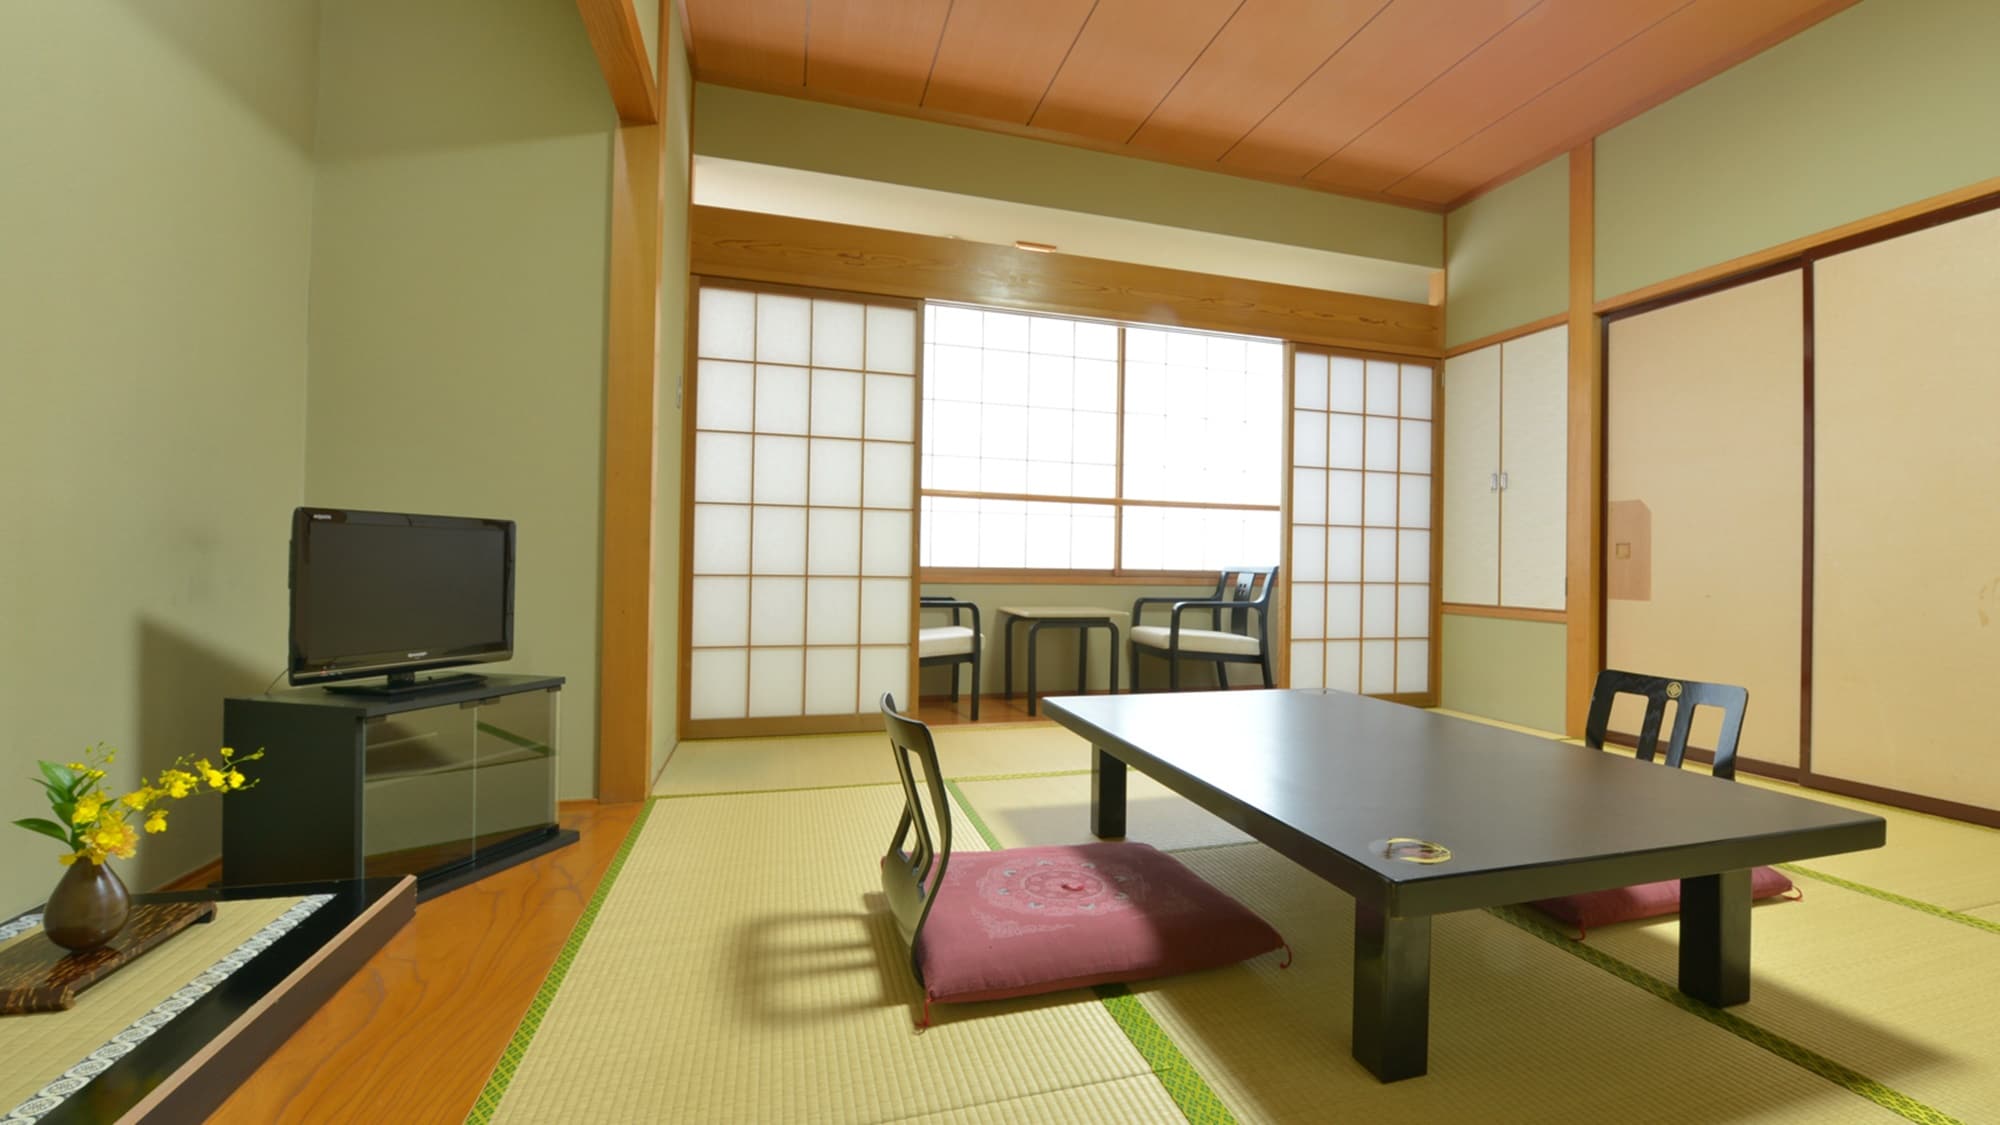 * [ตัวอย่างห้องสไตล์ญี่ปุ่น 10 เสื่อทาทามิ] ผ่อนคลายในพื้นที่ญี่ปุ่นที่กว้างขวาง